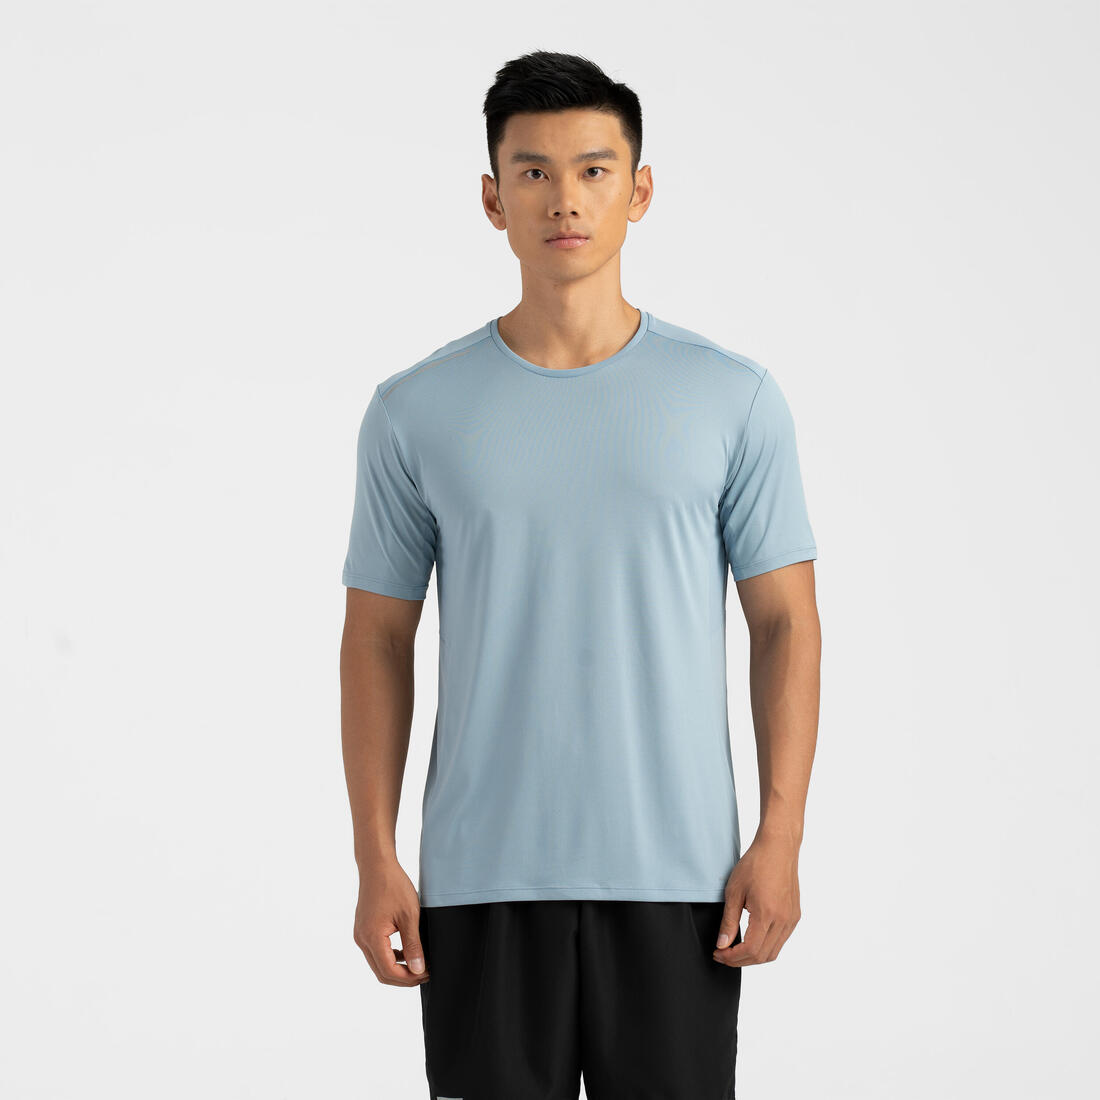 KALENJI(カレンジ) ランニング Tシャツ DRY+ メンズ